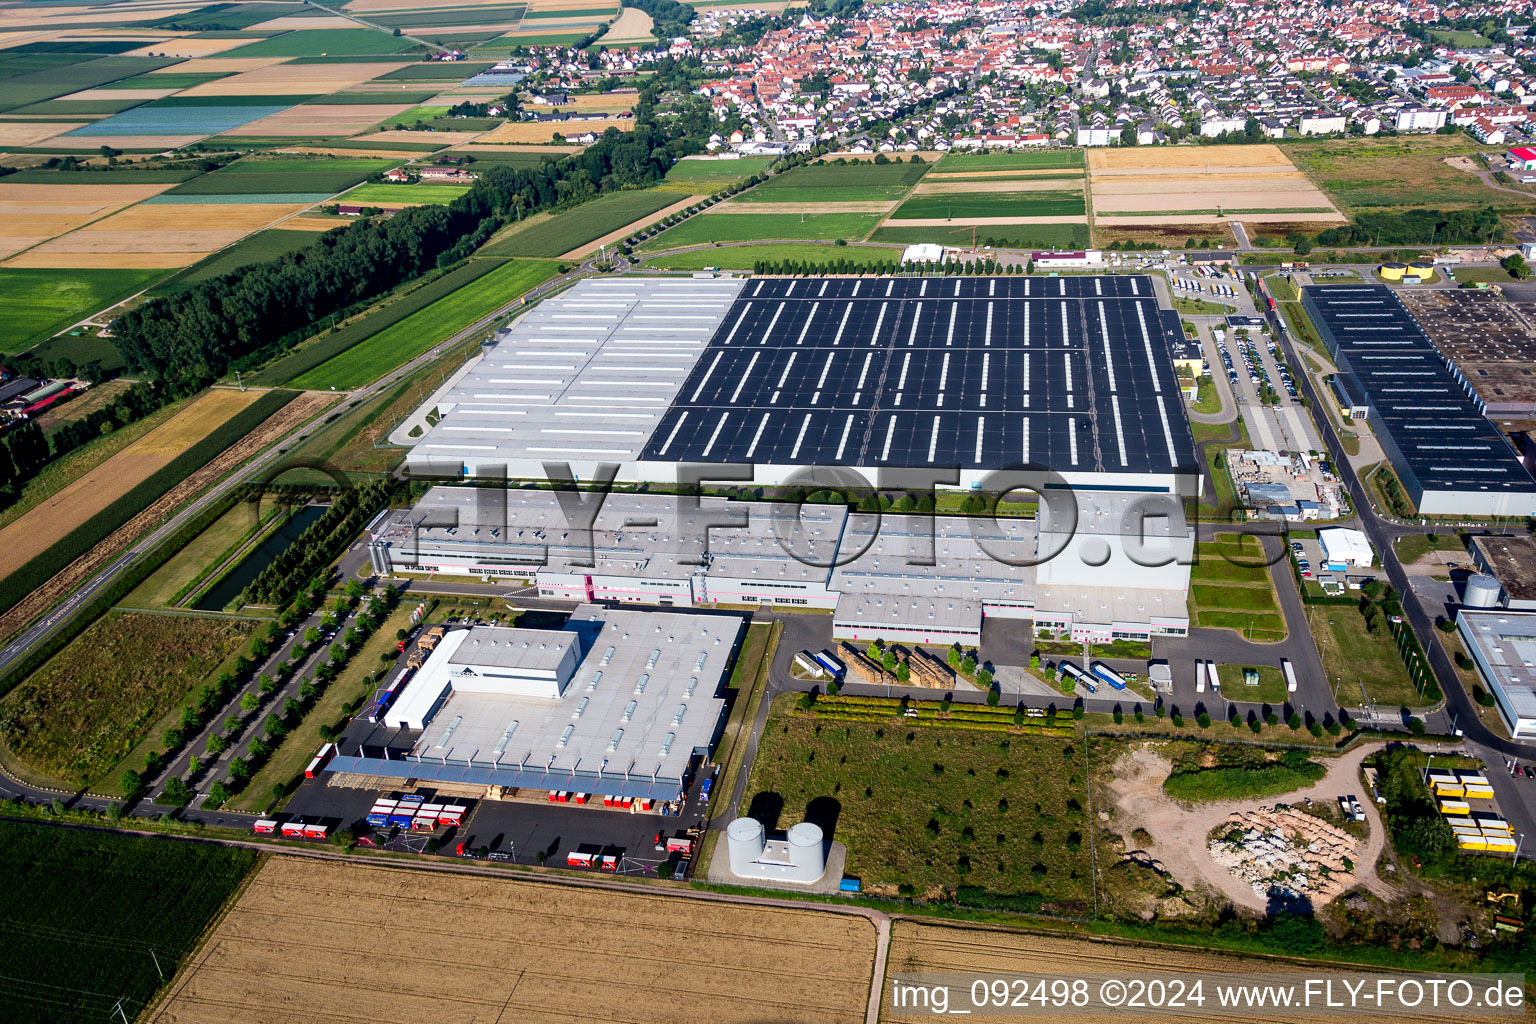 Vue aérienne de Locaux de l'usine Prowell GmbH à Offenbach an der Queich dans le département Rhénanie-Palatinat, Allemagne